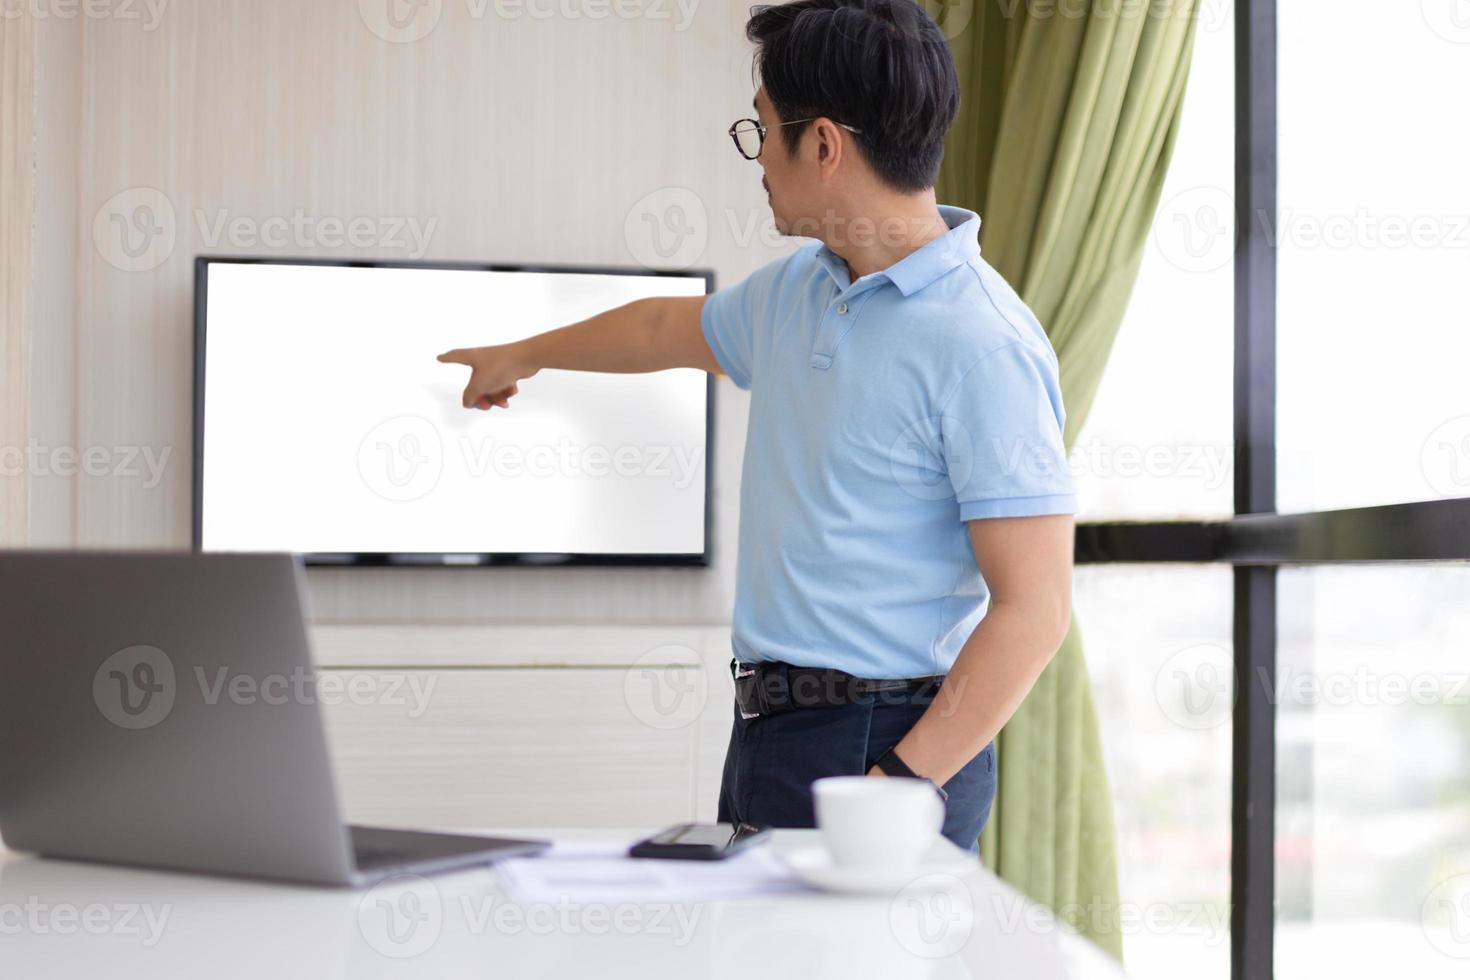 zakenman presentie in vergaderruimte met hand wijzend op scherm foto